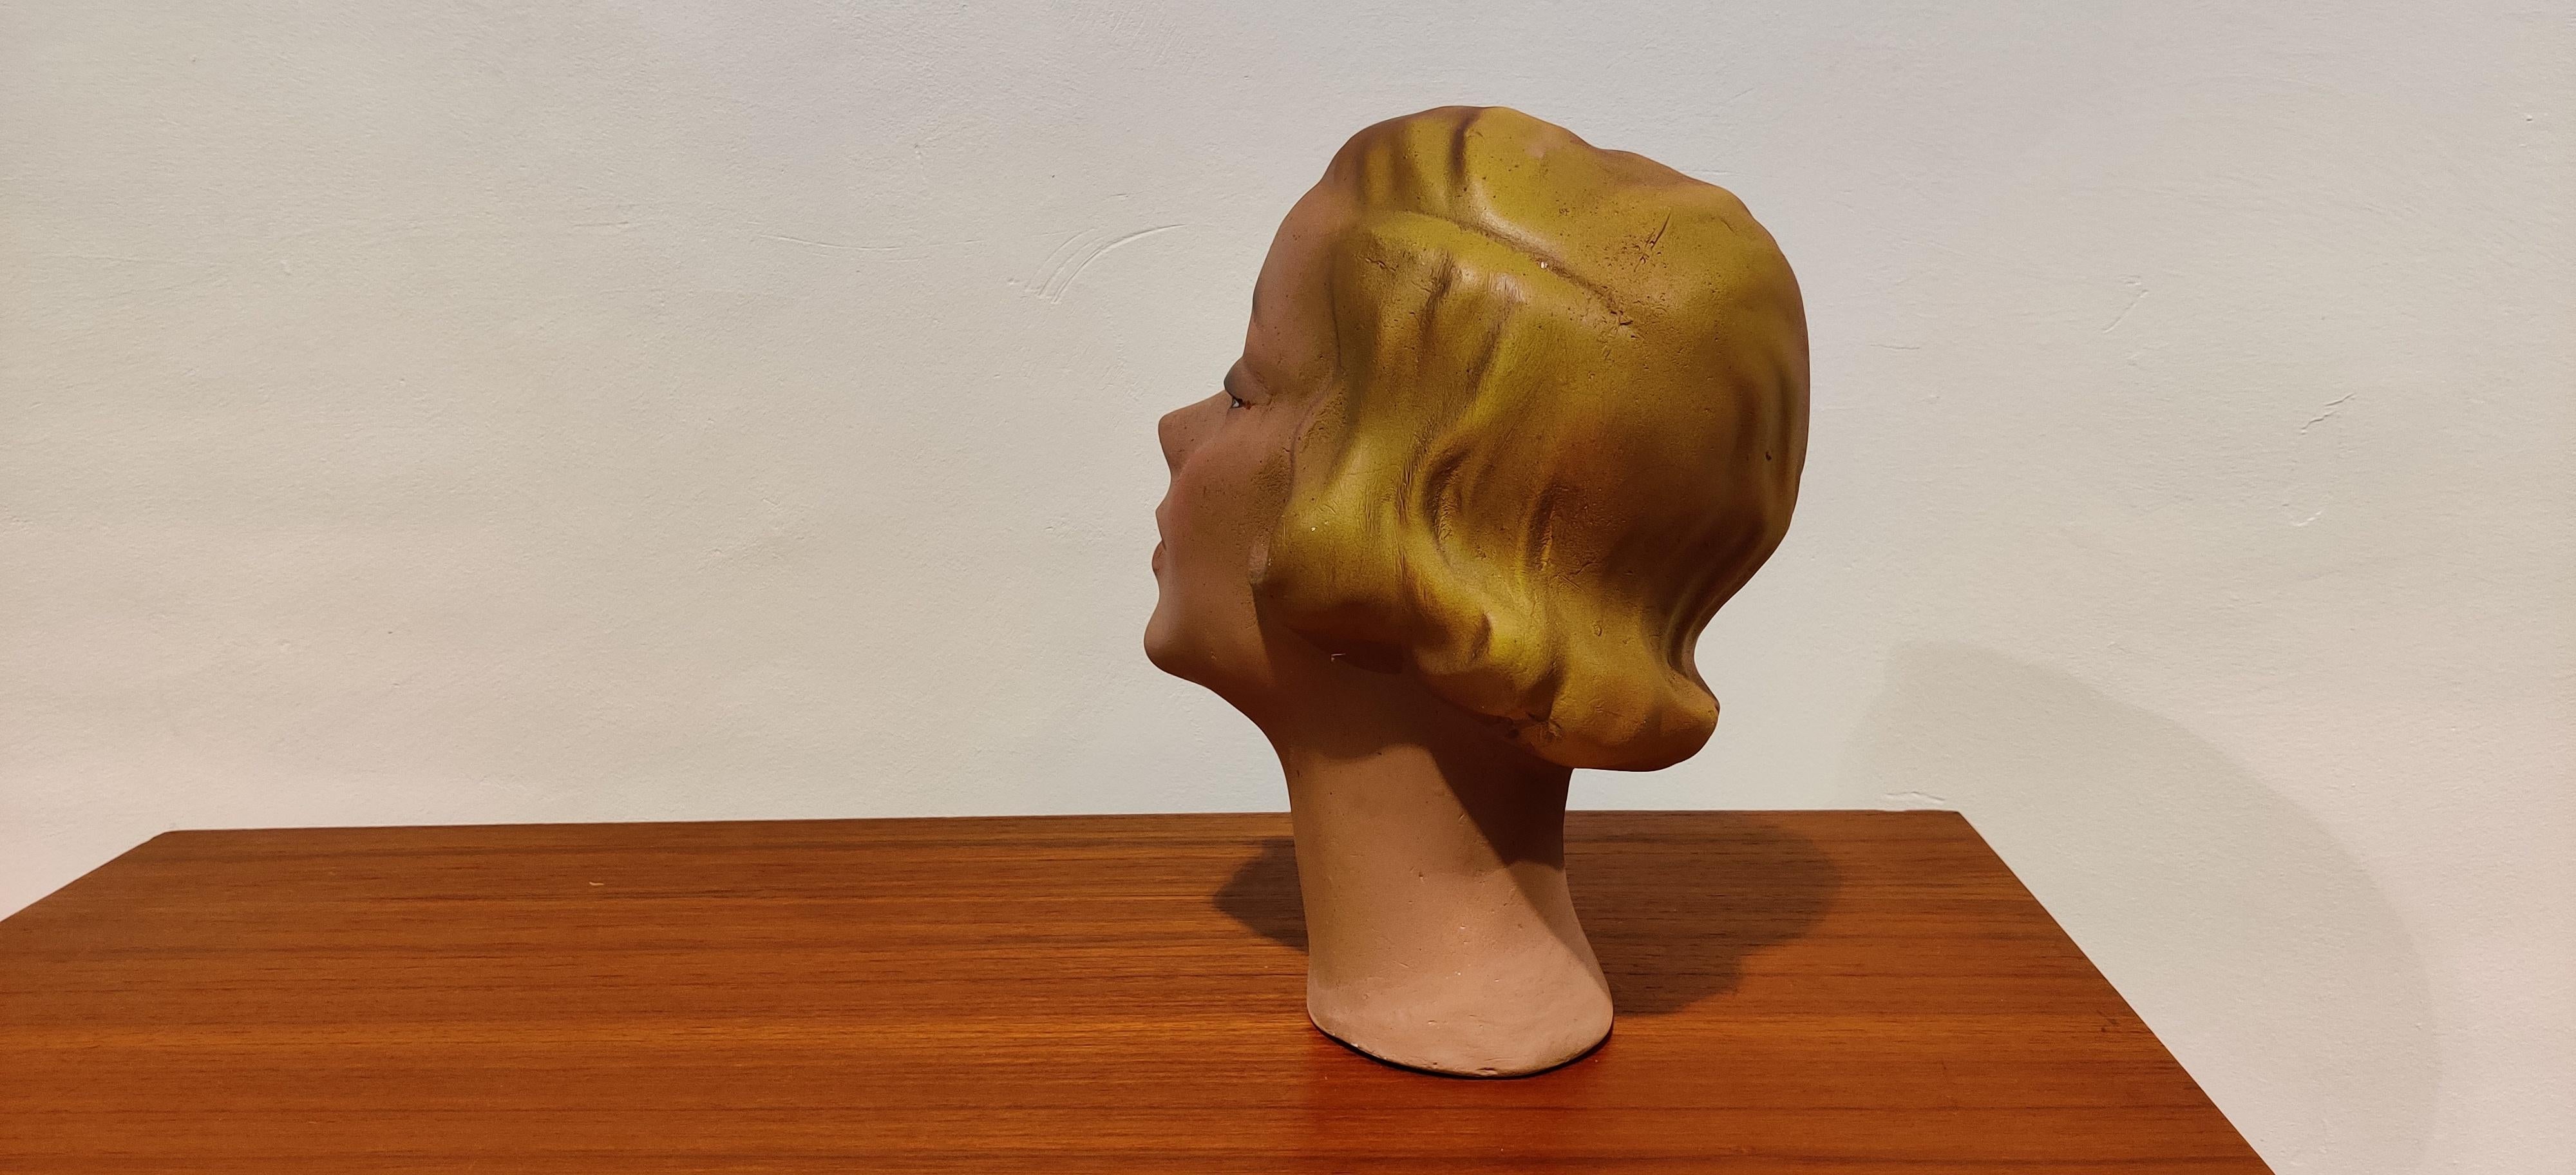 antique mannequin head